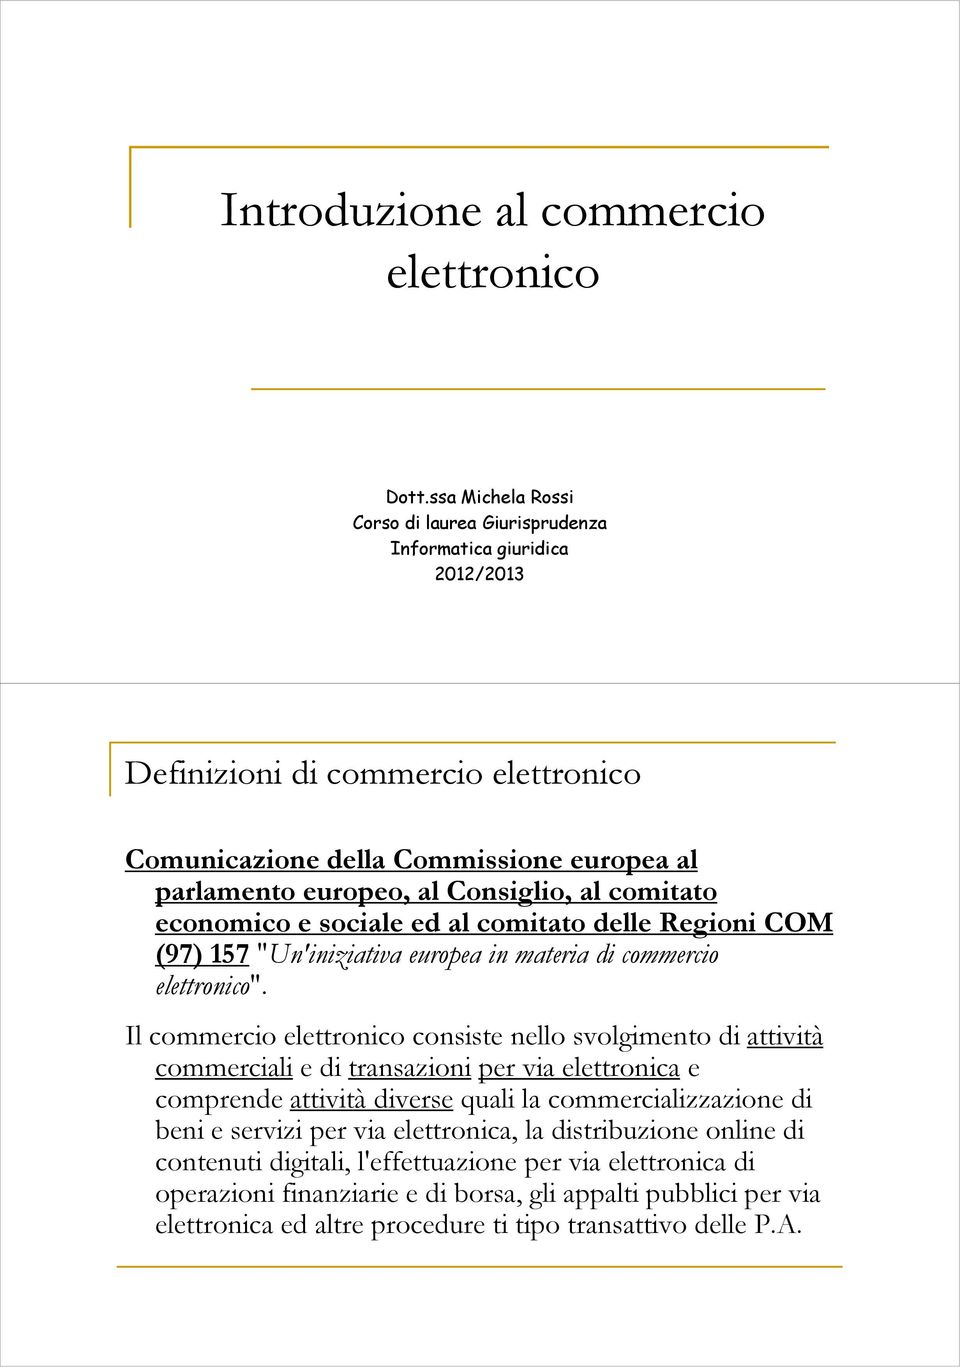 comitato economico e sociale ed al comitato delle Regioni COM (97) 157"Un'iniziativa europea in materia di commercio elettronico".